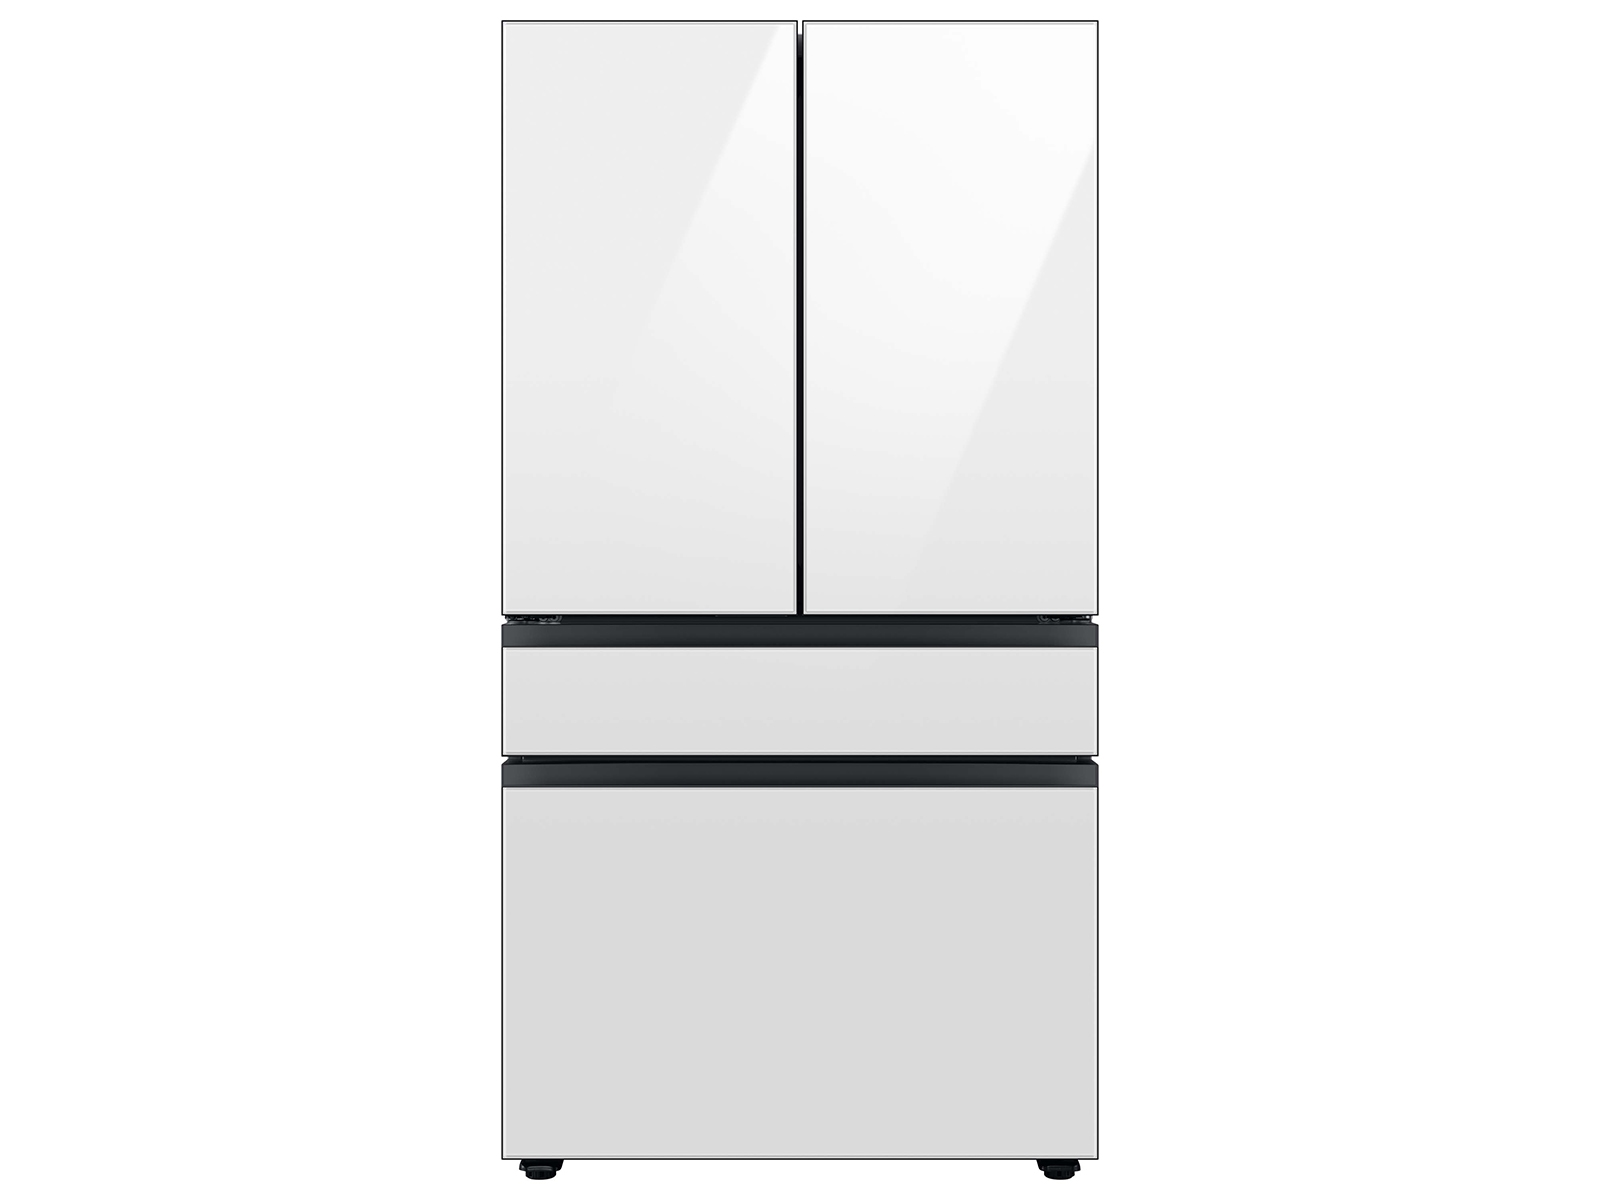 Photos - Fridge Samsung Bespoke 4-Door French Door Refrigerator  with AutoFill (29 cu. ft.)